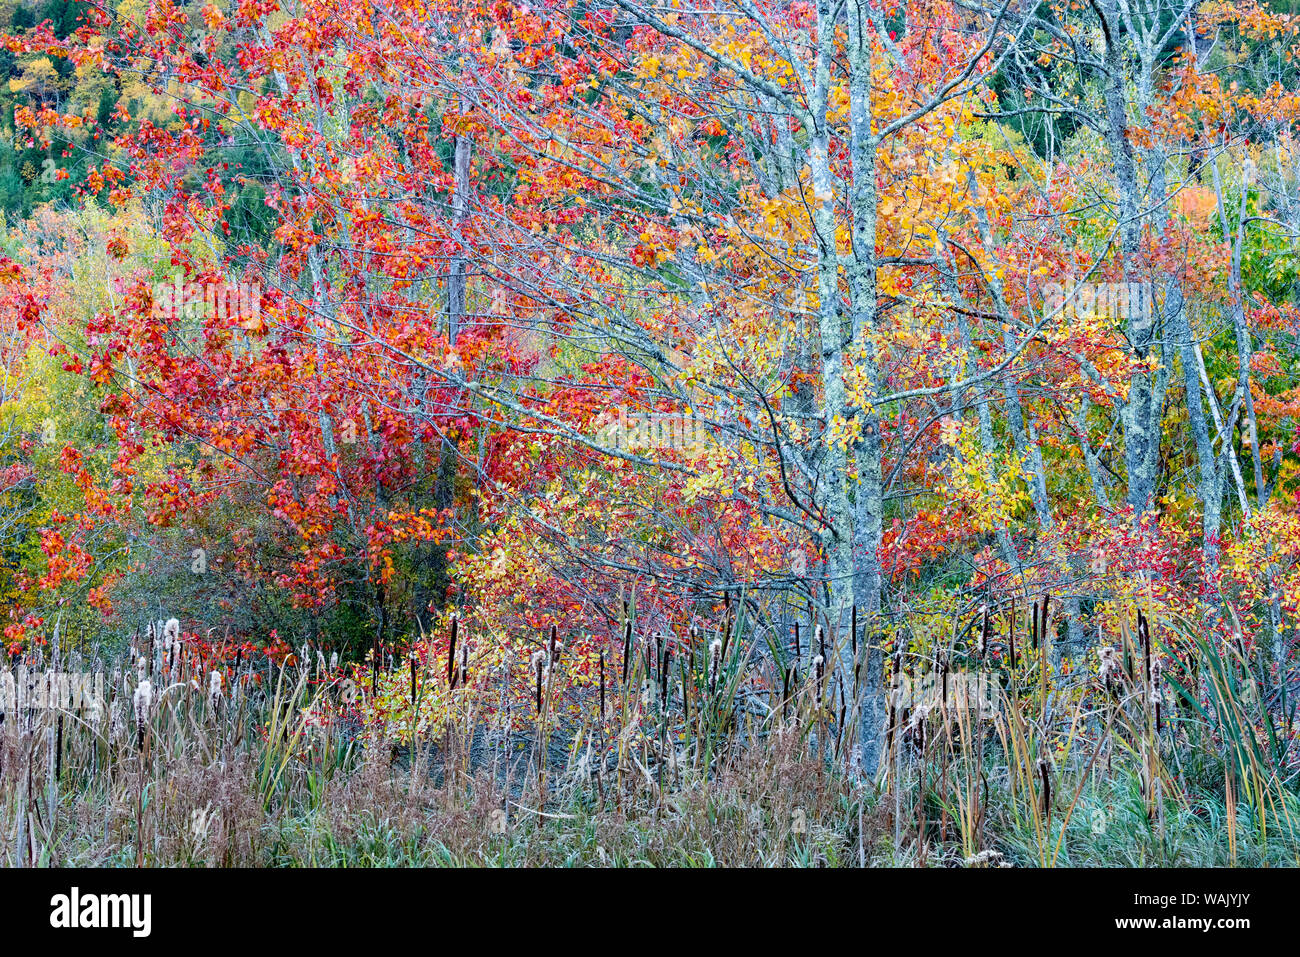 USA, Maine. Buntes Herbstlaub in den Wäldern von Sieur de Monts, Acadia National Park. Stockfoto